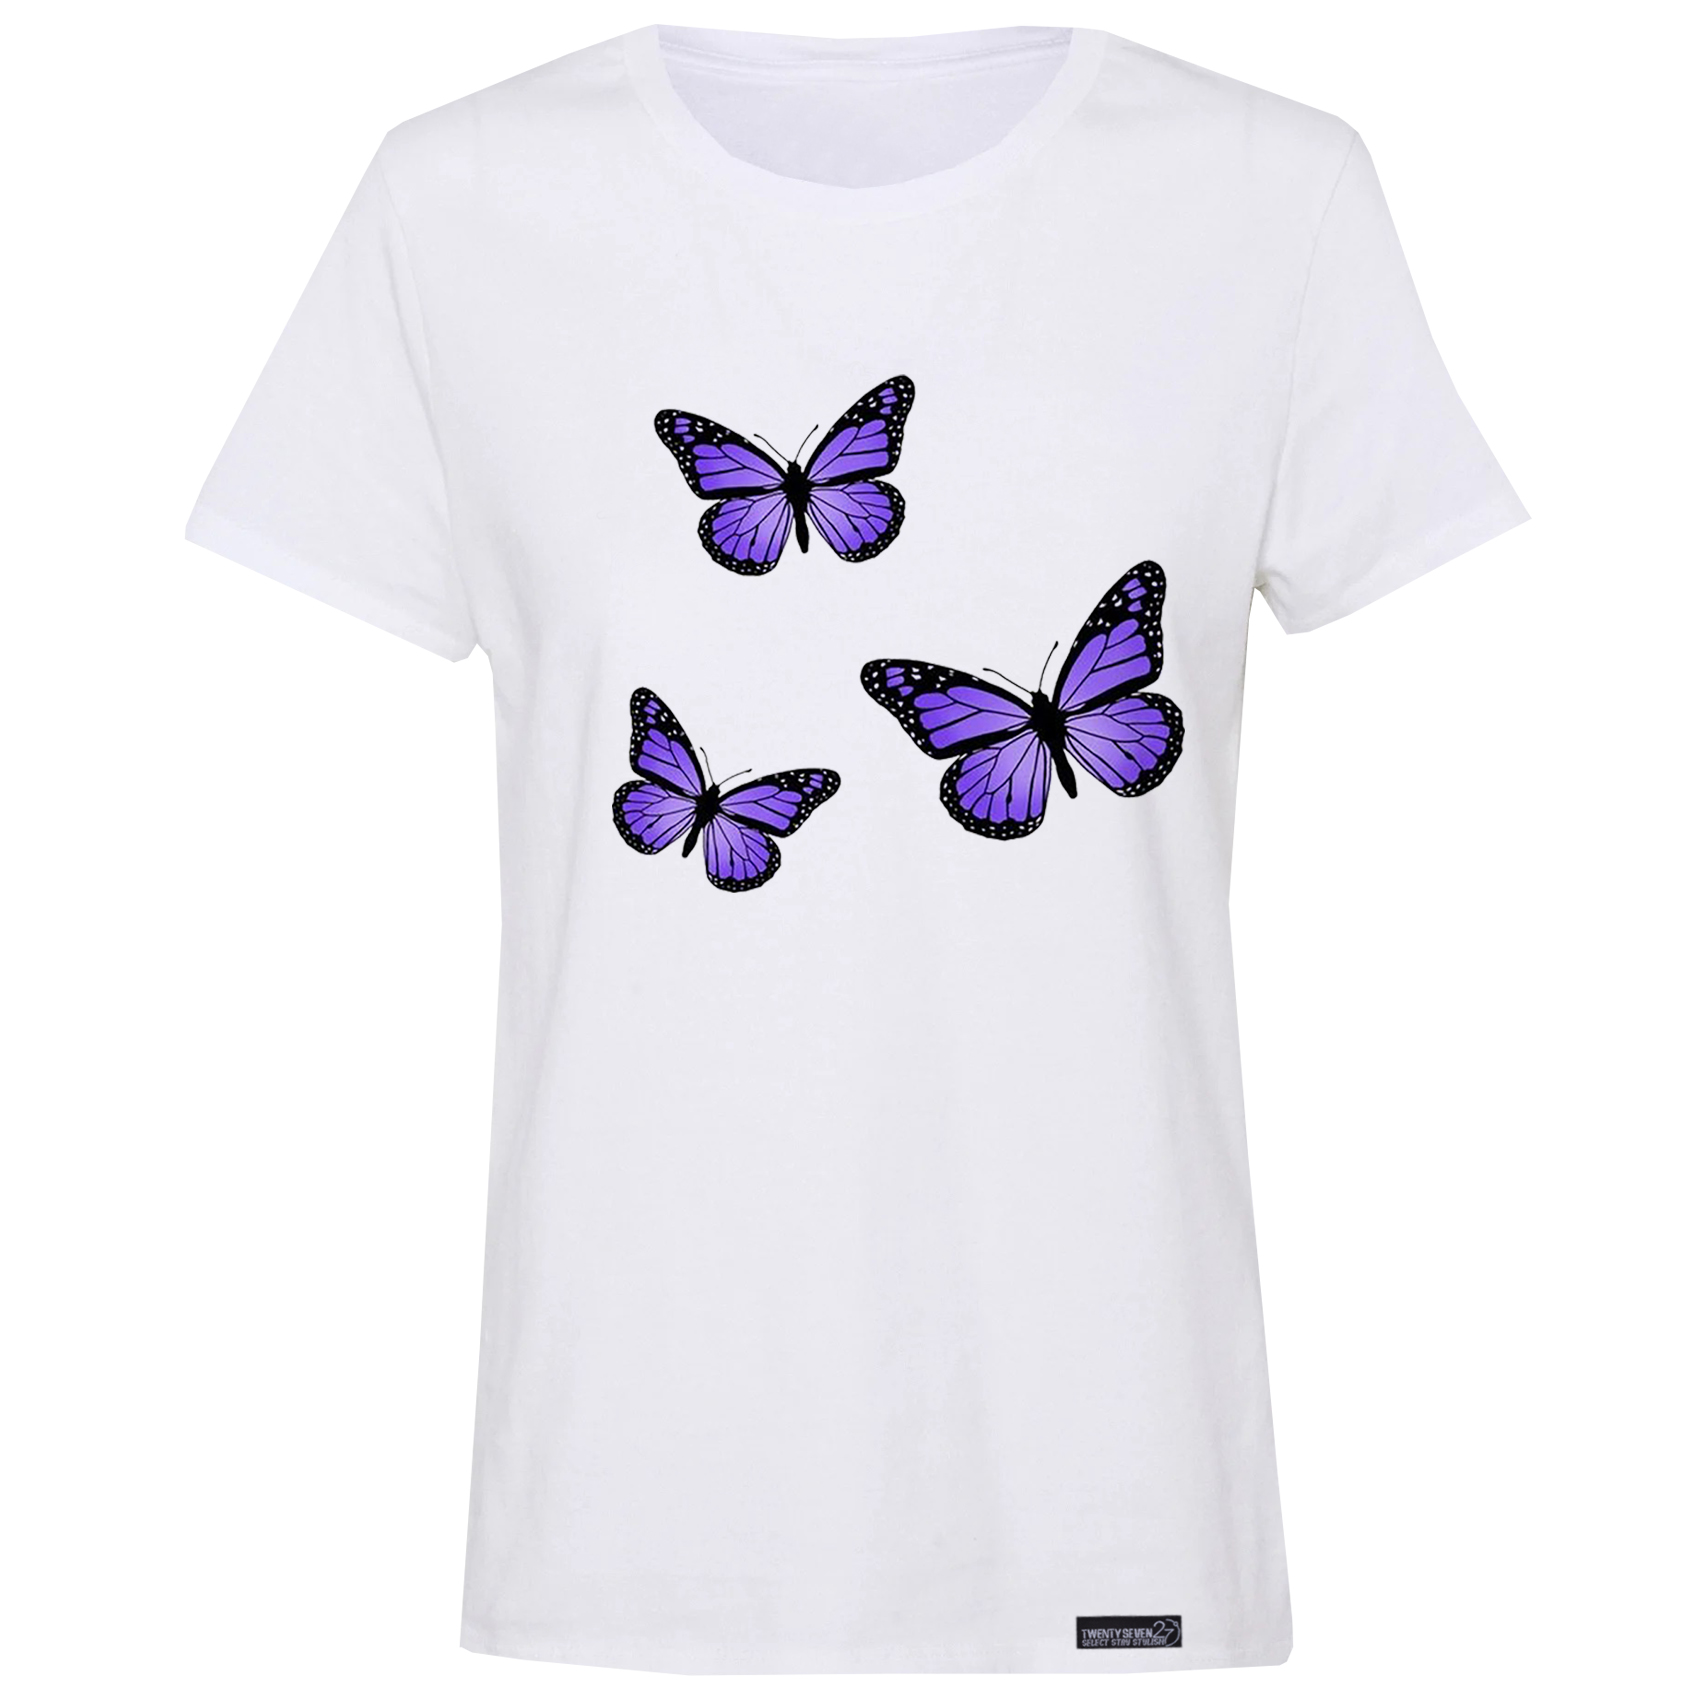 تی شرت آستین کوتاه زنانه 27 مدل پروانه کد RN617 -  - 2